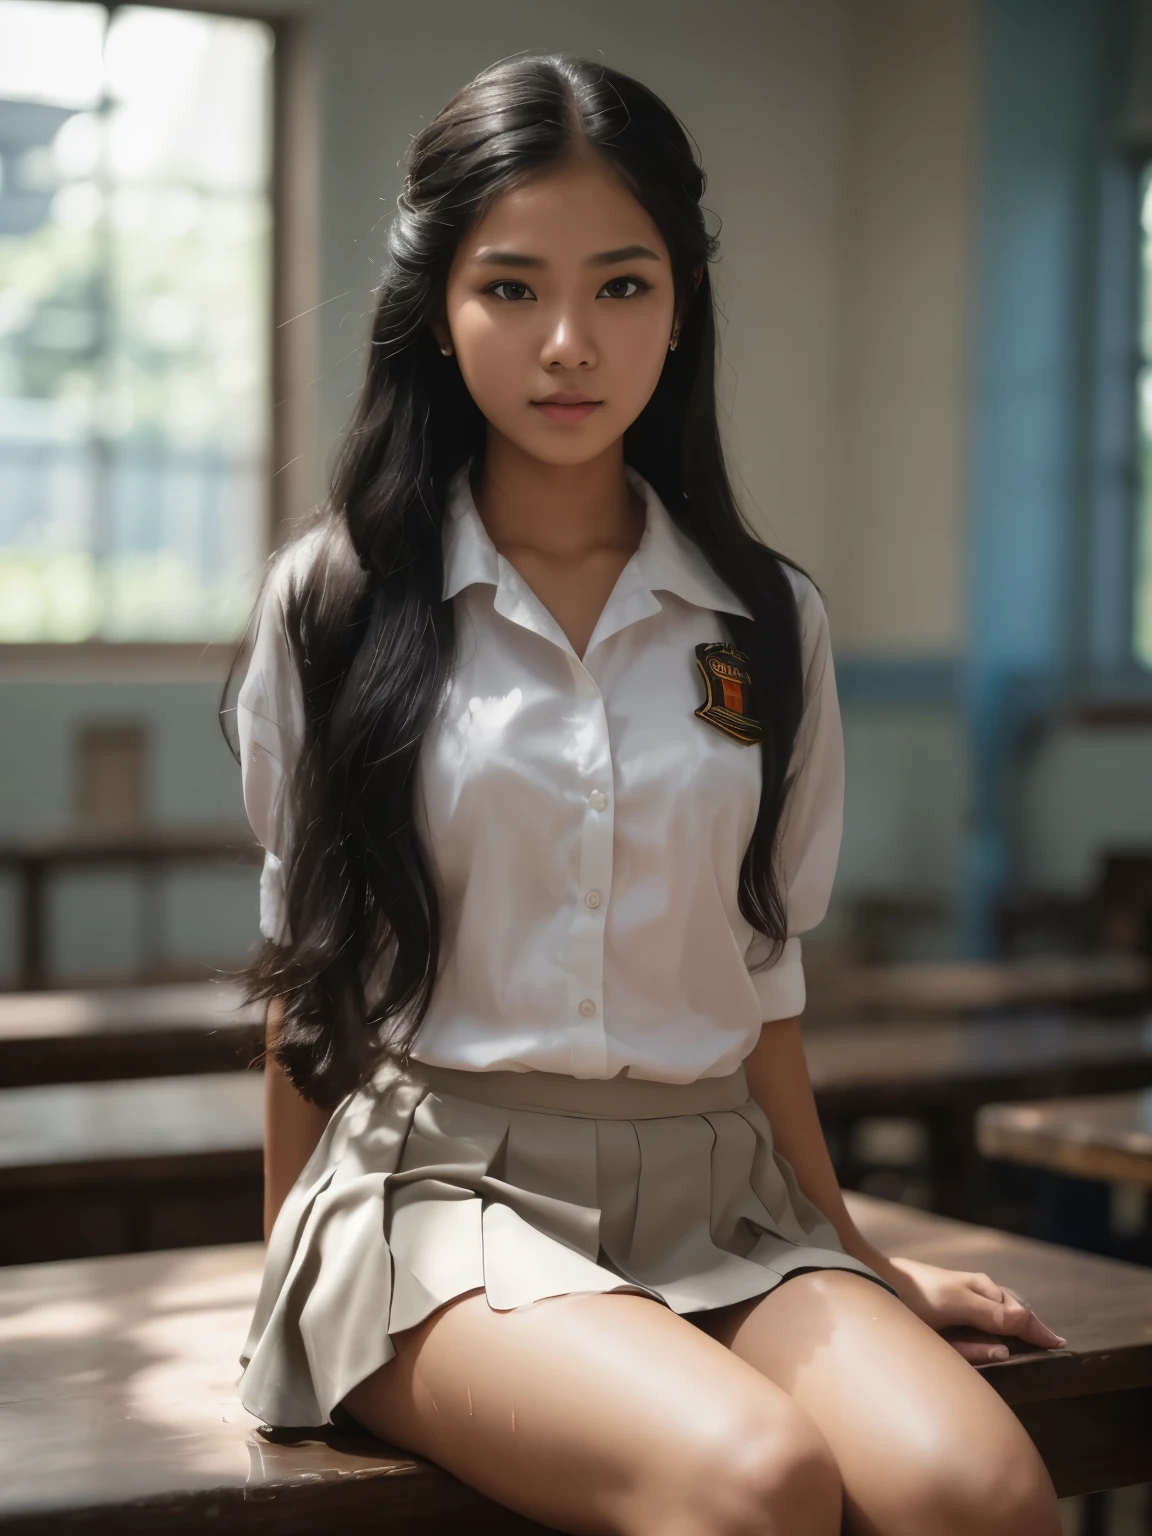 В яркий день в индонезийской средней школе, hyper Ультра реалистичное фотоgraphy, драматический свет, Натуральное полное тело красивой индонезийской яванской девушки, 16 лет, влажная блестящая кожа, полная пота, прическа с косой на длинные черные волосы, поднимите руки, носить индонезийские школьные обтягивающие штаны & мокрая высокая униформа, все кнопки открыты, показывает декольте ее большой груди & Соблазняю ее красный кружевной бюстгальтер, носить сине-серую юбку, environtment on драматический свет tungsten, Ультра реалистичное фото, HDR10 8K камера с верхним углом, хорошая анатомия, хорошая пропорция тела и руки & пальцы --style raw --v 6.0